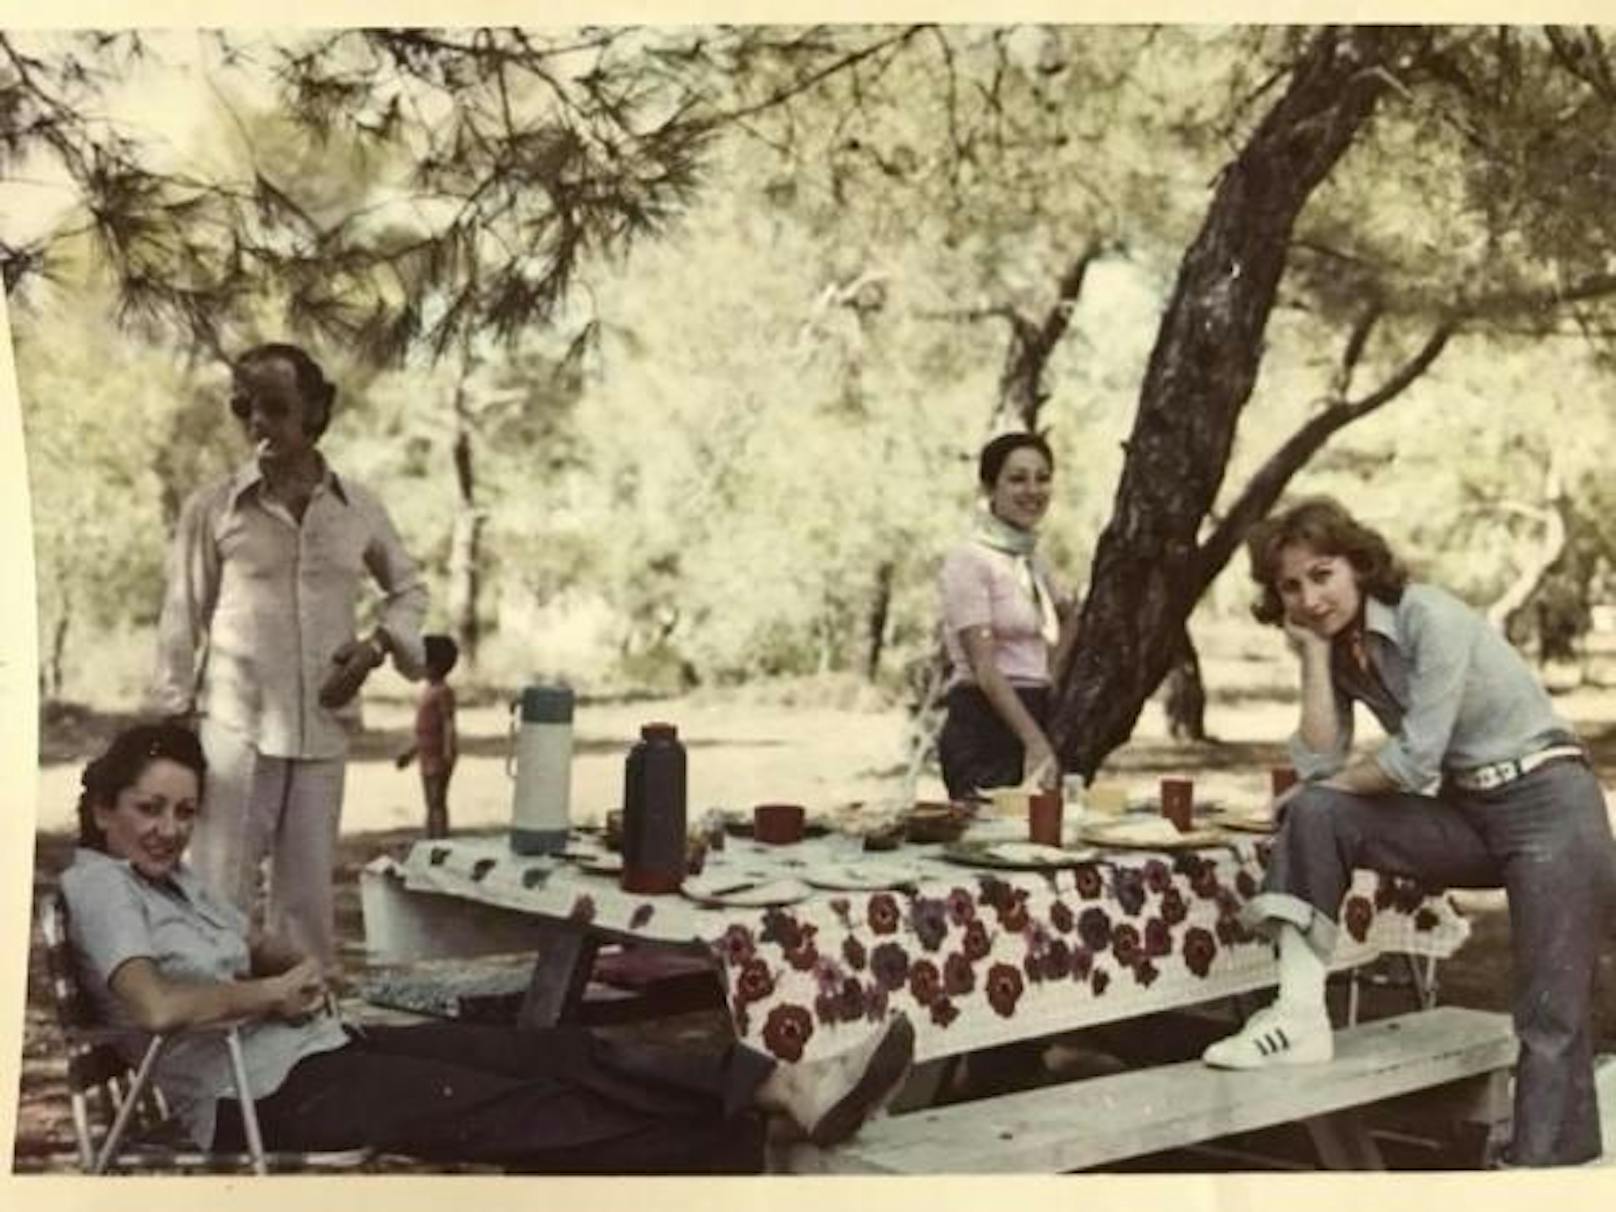 Auf der Facebook-Seite "Before Sharia Spoiled Everything" posten die Mitglieder Alltagsfotos aus muslimischen Ländern. Dieses Bild zeigt die Familie des Gruppen-Initiators Emrah Erken in einem Wald in der Nähe der türkischen Stadt Adana im Jahr 1974.